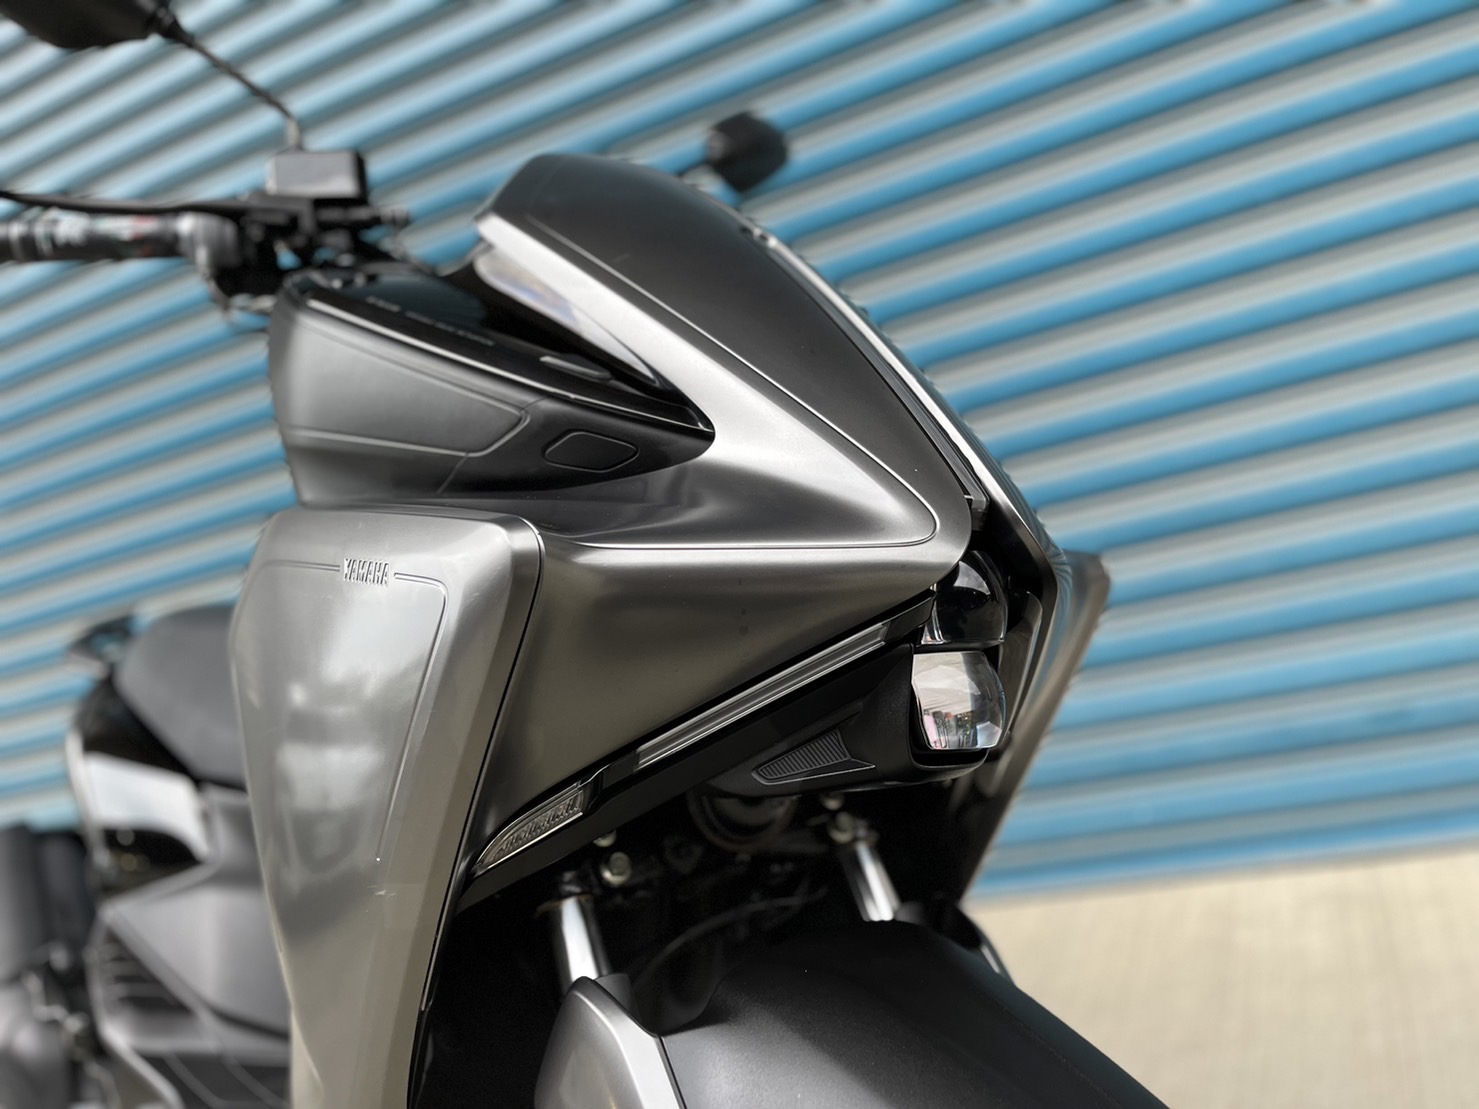 【小資族二手重機買賣】Yamaha Augur155 - 「Webike-摩托車市」 市場少有 原廠保固 小資族二手重機買賣